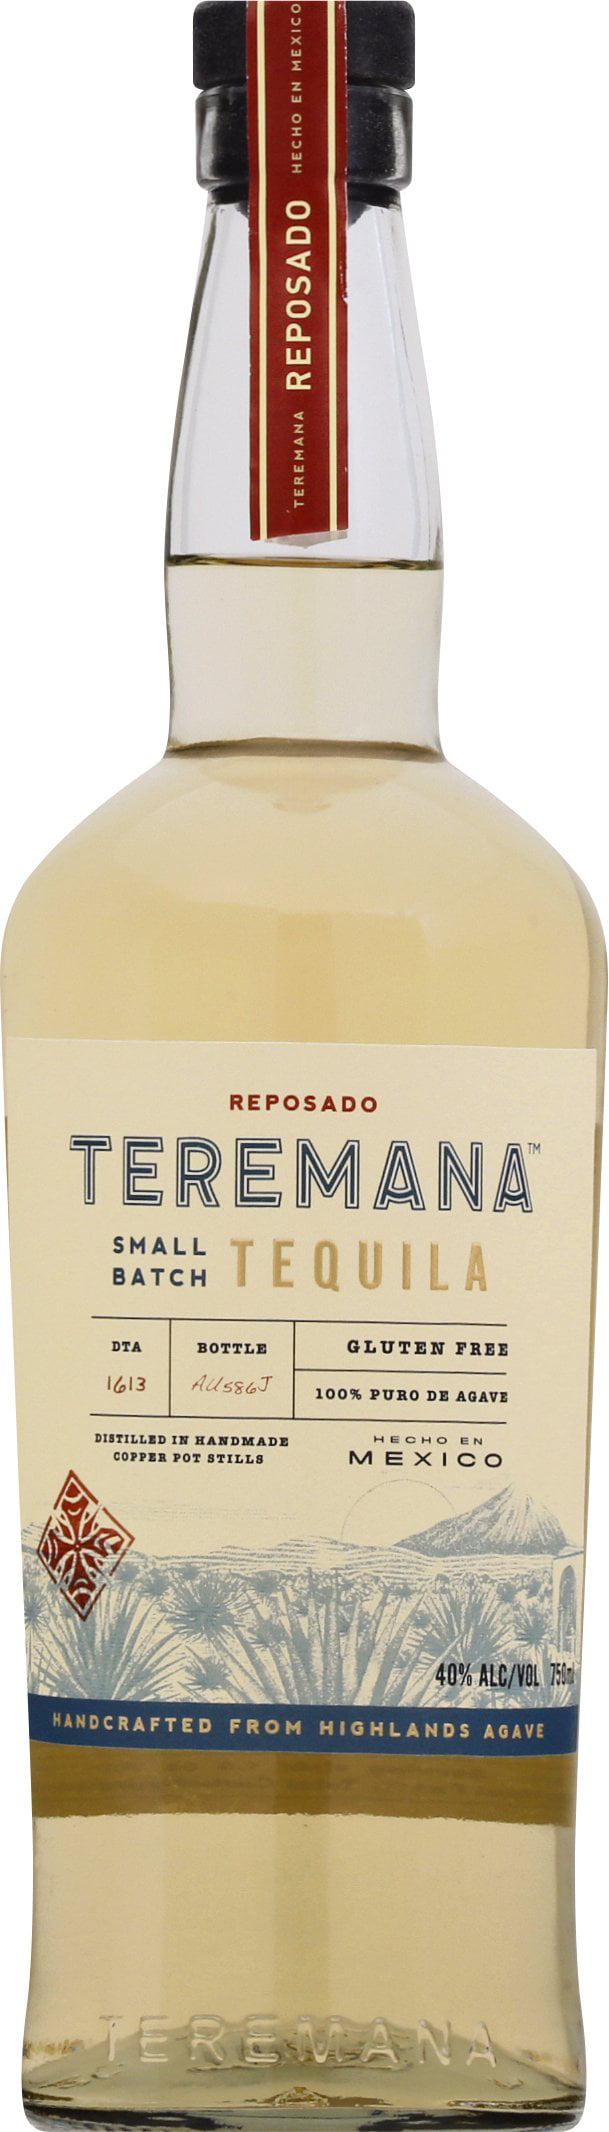 コレクション teremana tequila price in bd 316776Teremana